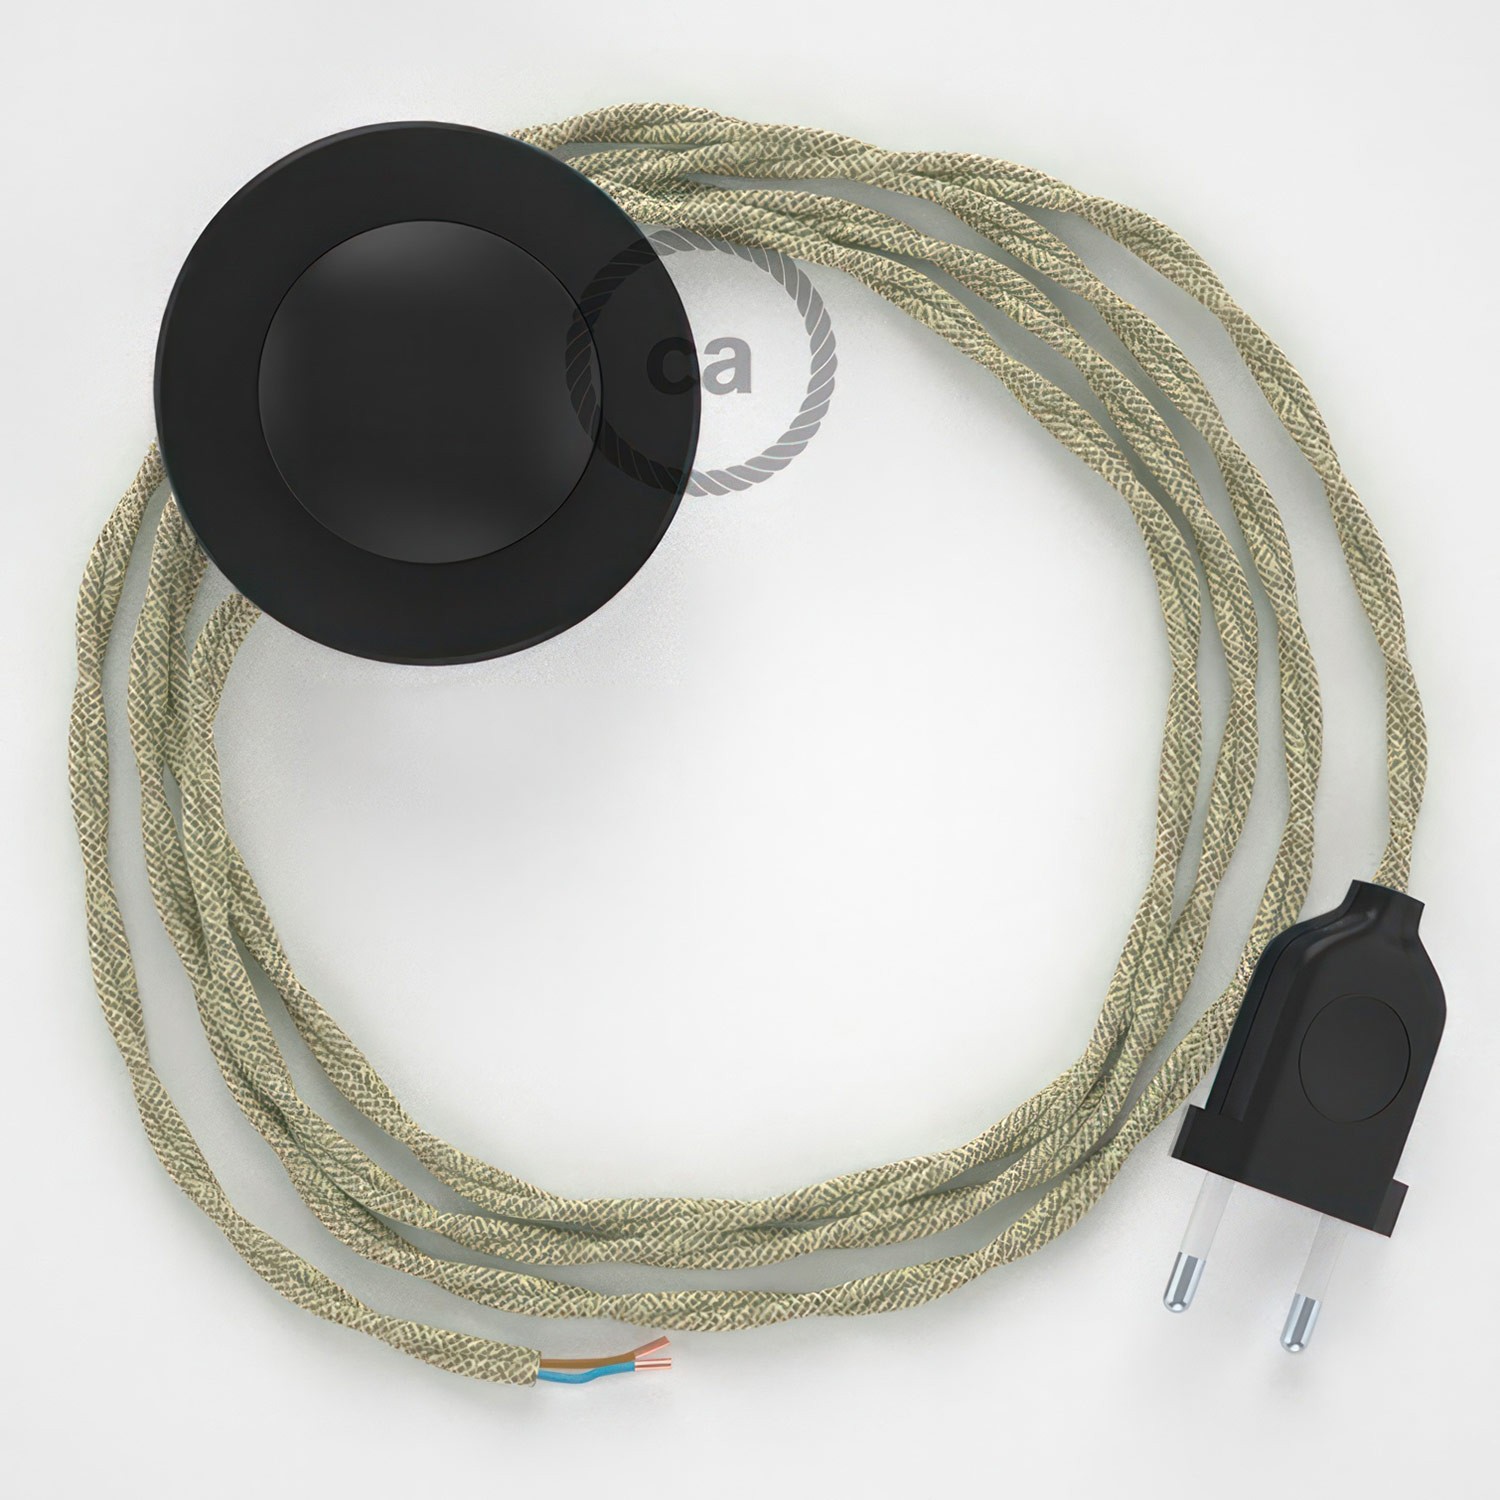 Cableado para lámpara de pie, cable TN01 Lino Natural Neutro 3 m. Elige tu el color de la clavija y del interruptor!